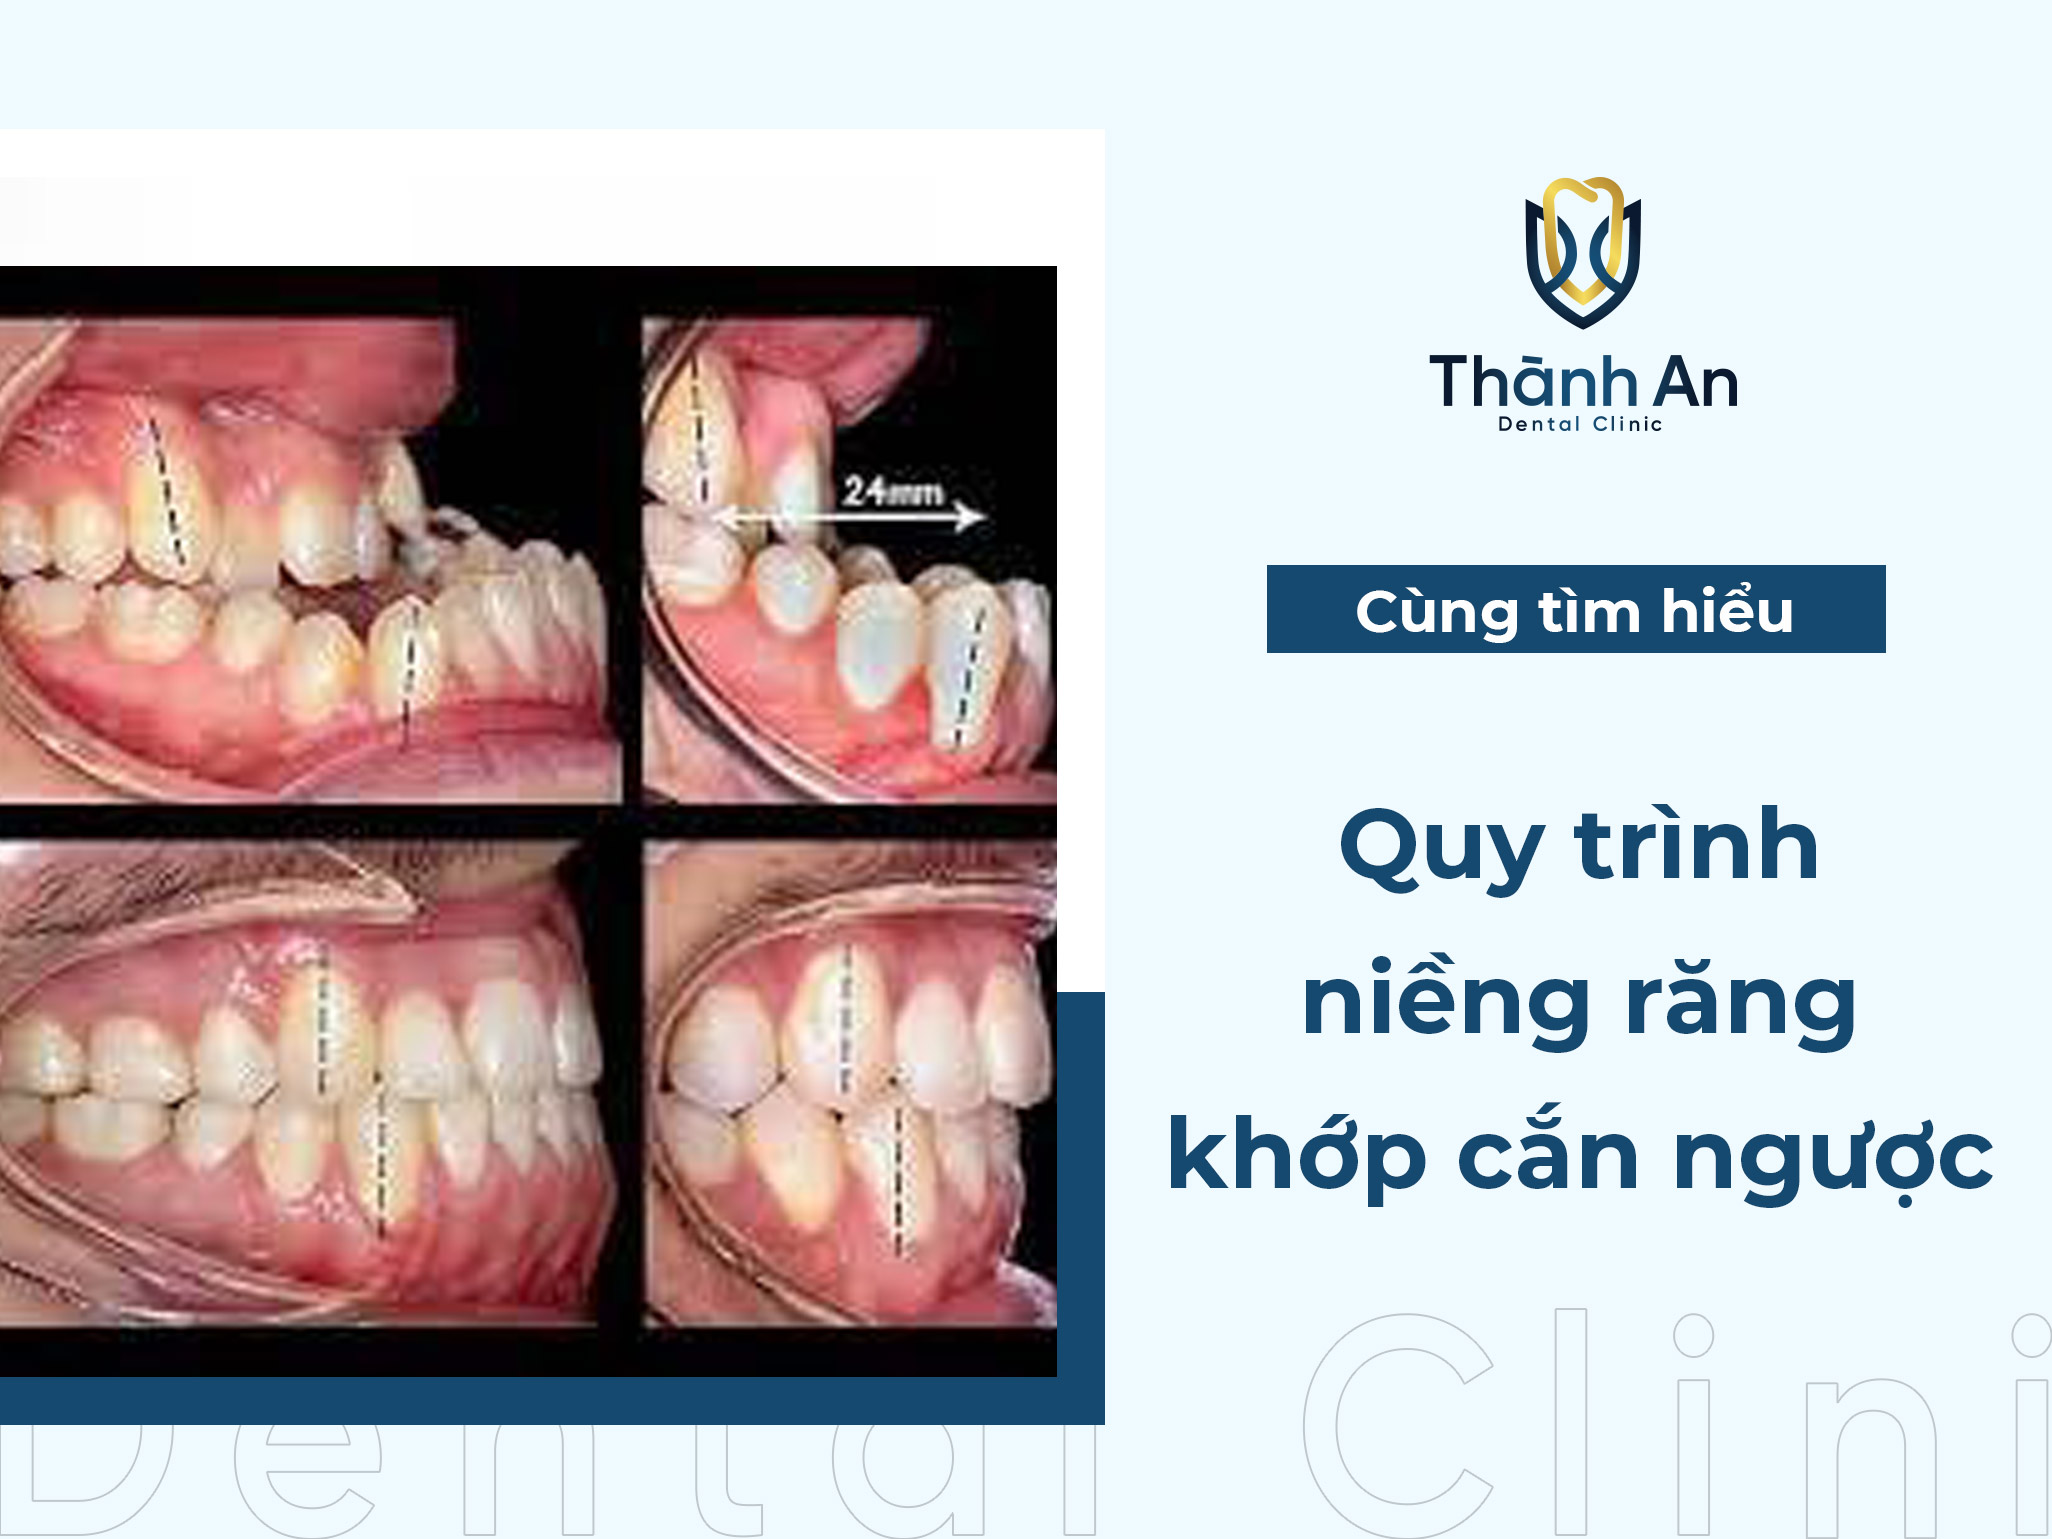 5 bước trong quy trình niềng răng khớp cắn ngược, bạn đã biết